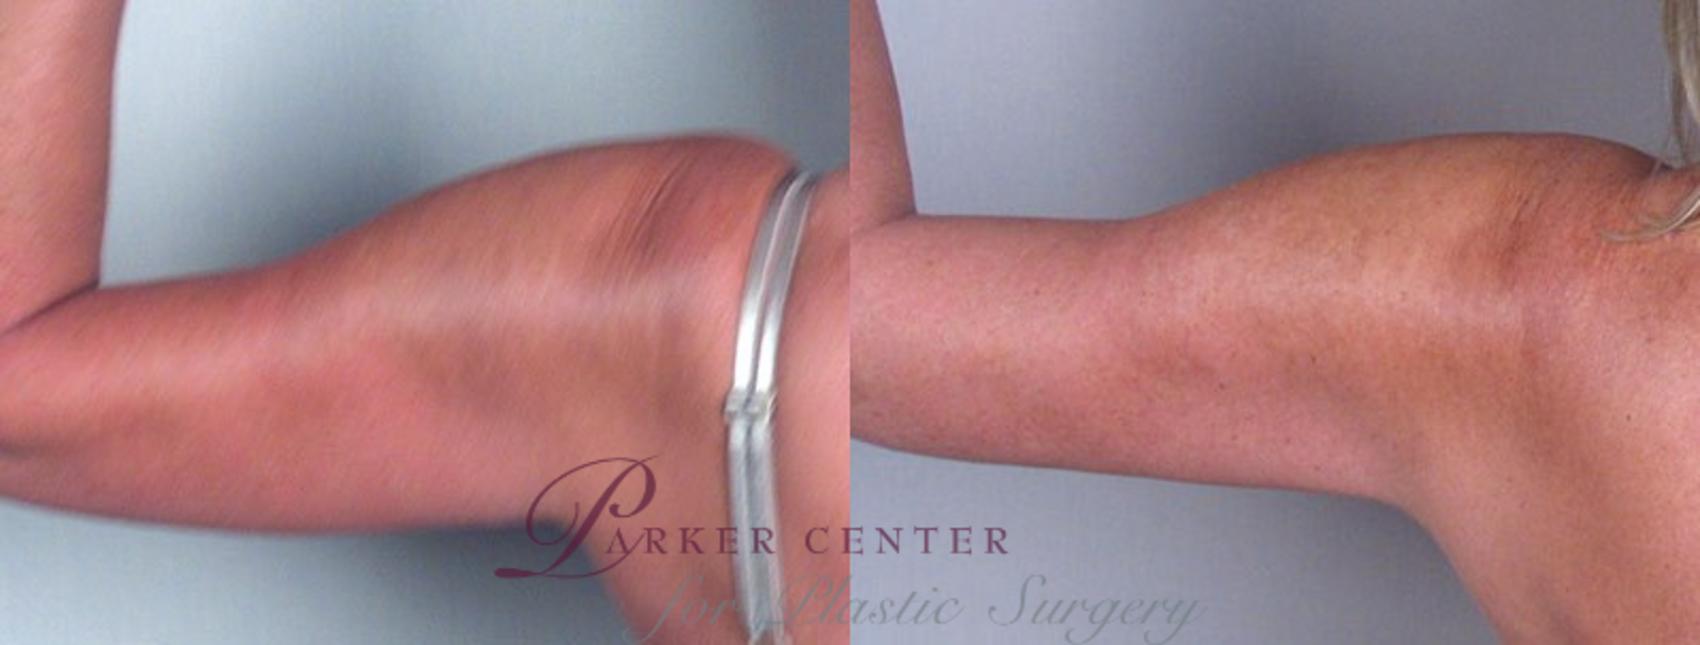 Upper Arm Rejuvenation Case 825 Before & After View #3 | Paramus, NJ | Parker Center for Plastic Surgery